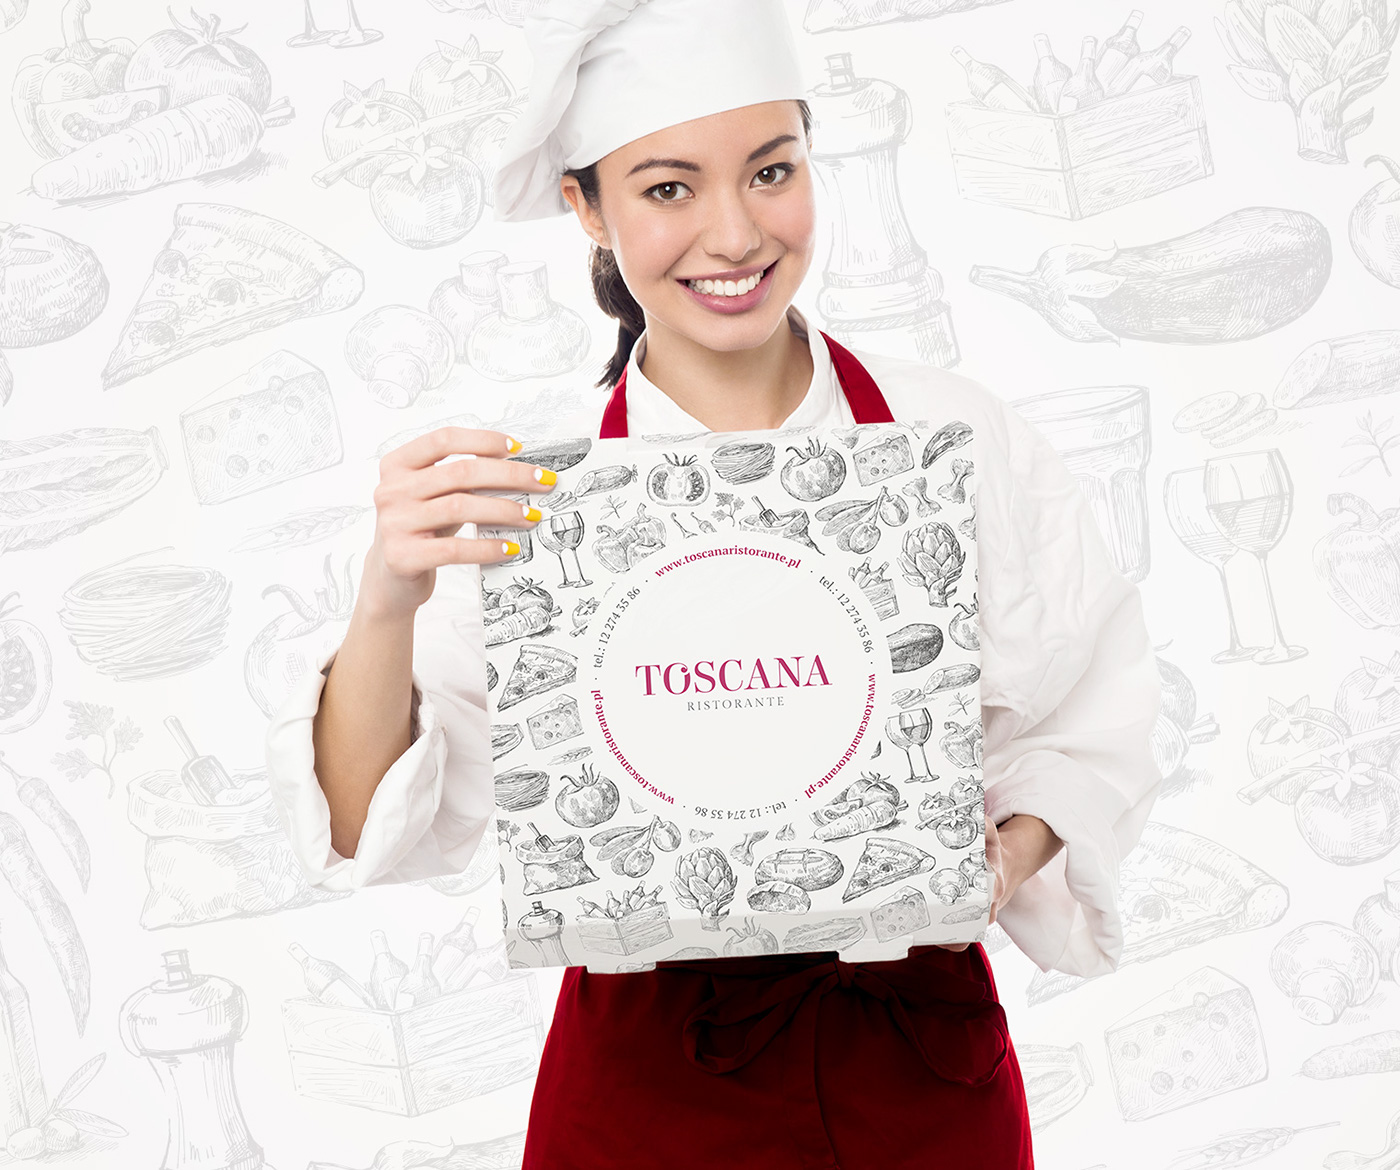 logo mark restaurant ristorante Pizza Pasta italian package fresh toscana Italy